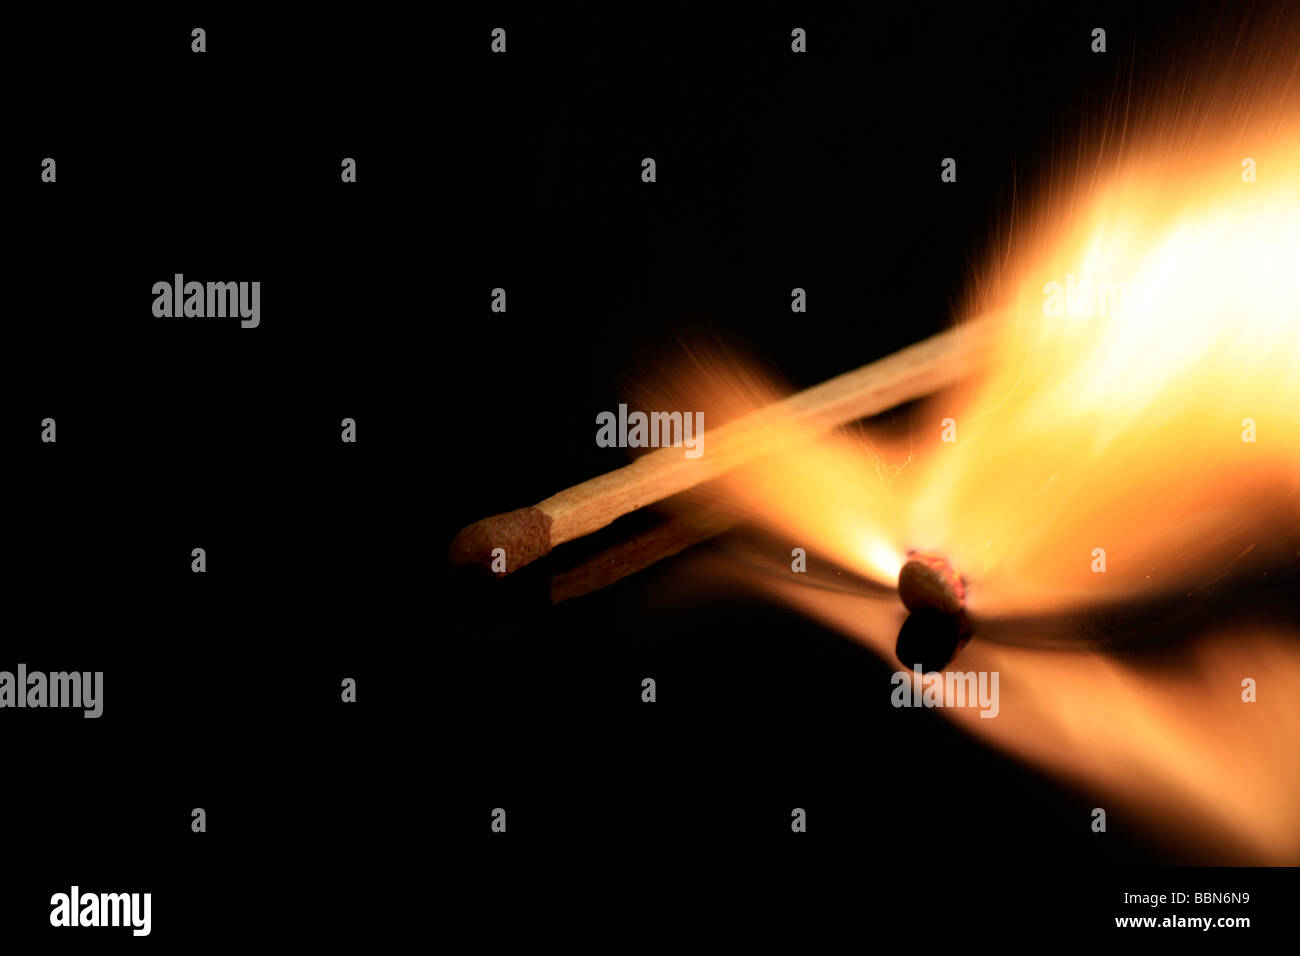 A match stick on fire, on a black reflective surface Stock Photo